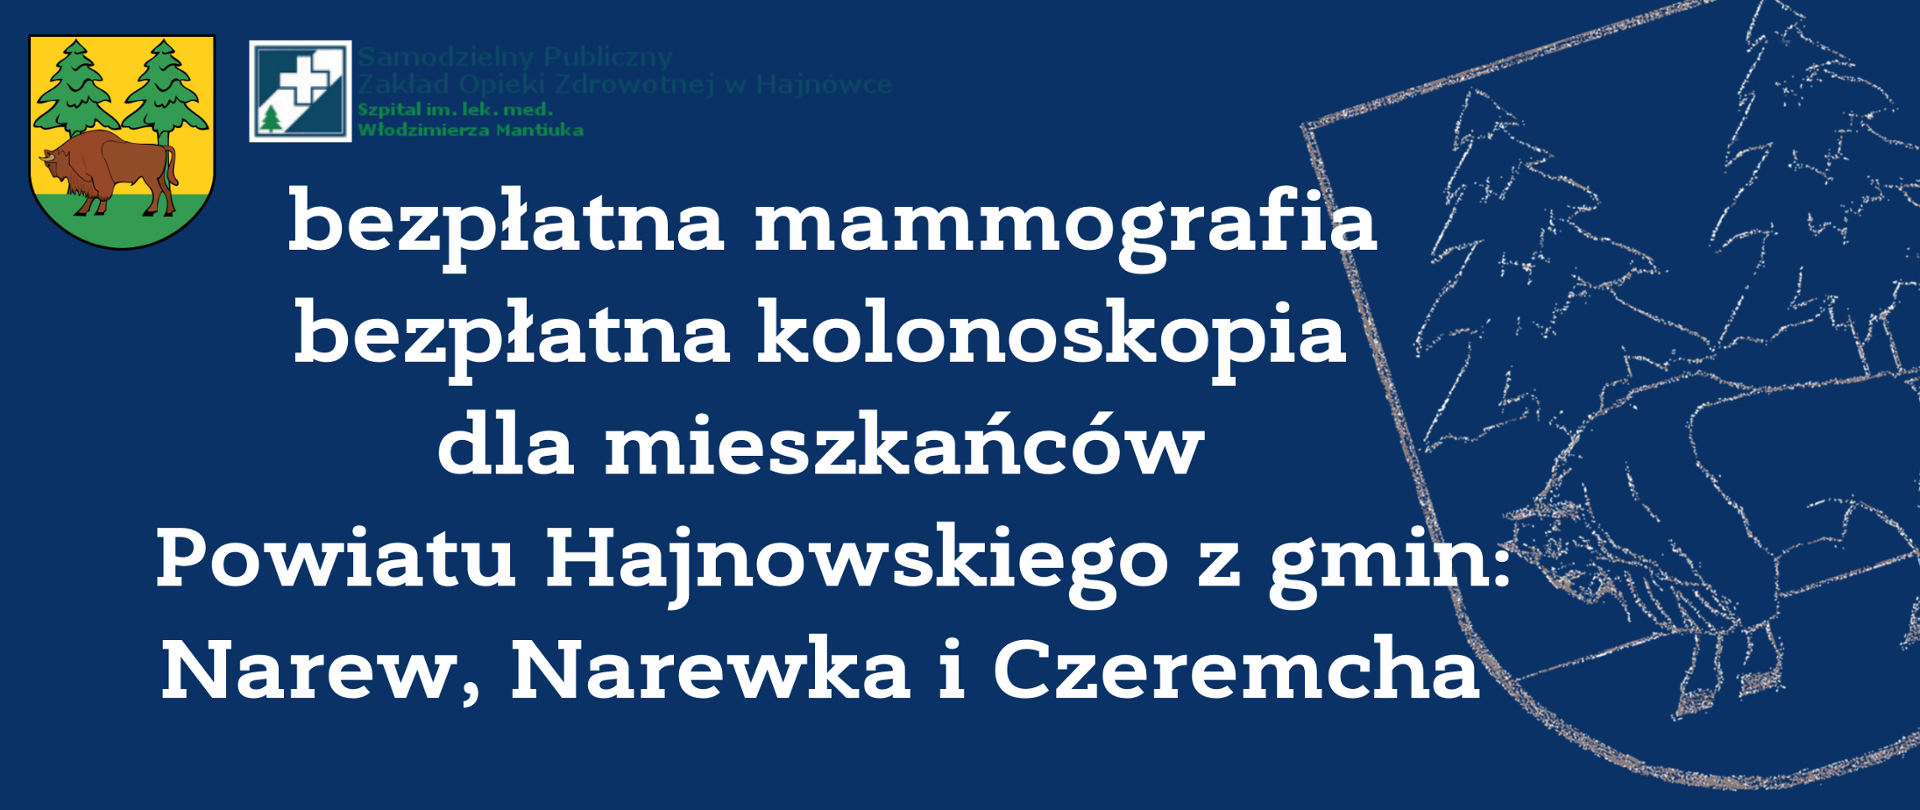 Bezpłatna mammografia, bezpłatna kolonoskopia dla mieszkańców Powiatu Hajnowskiego z gmin: Narew, Narewka i Czeremcha